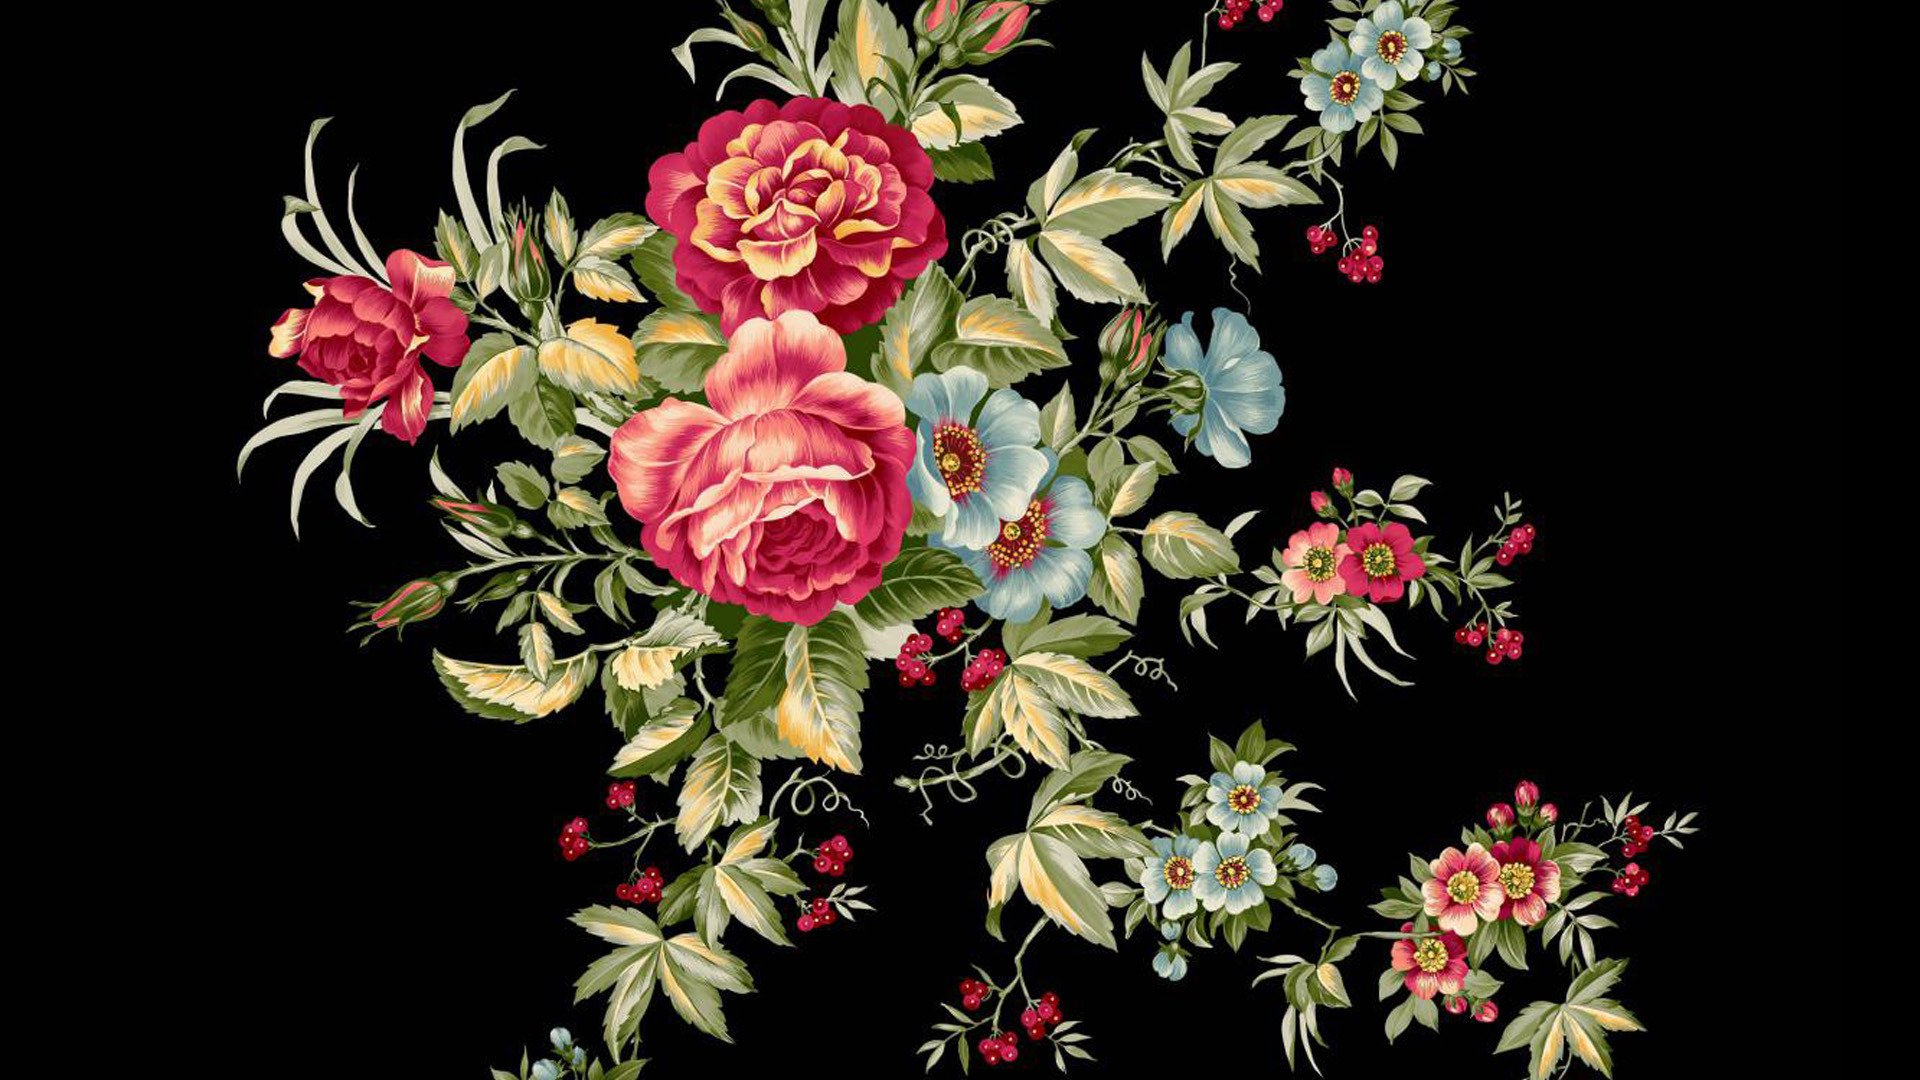 Download Roses Flowers Vintage RoyaltyFree Stock Illustration Image   Pixabay